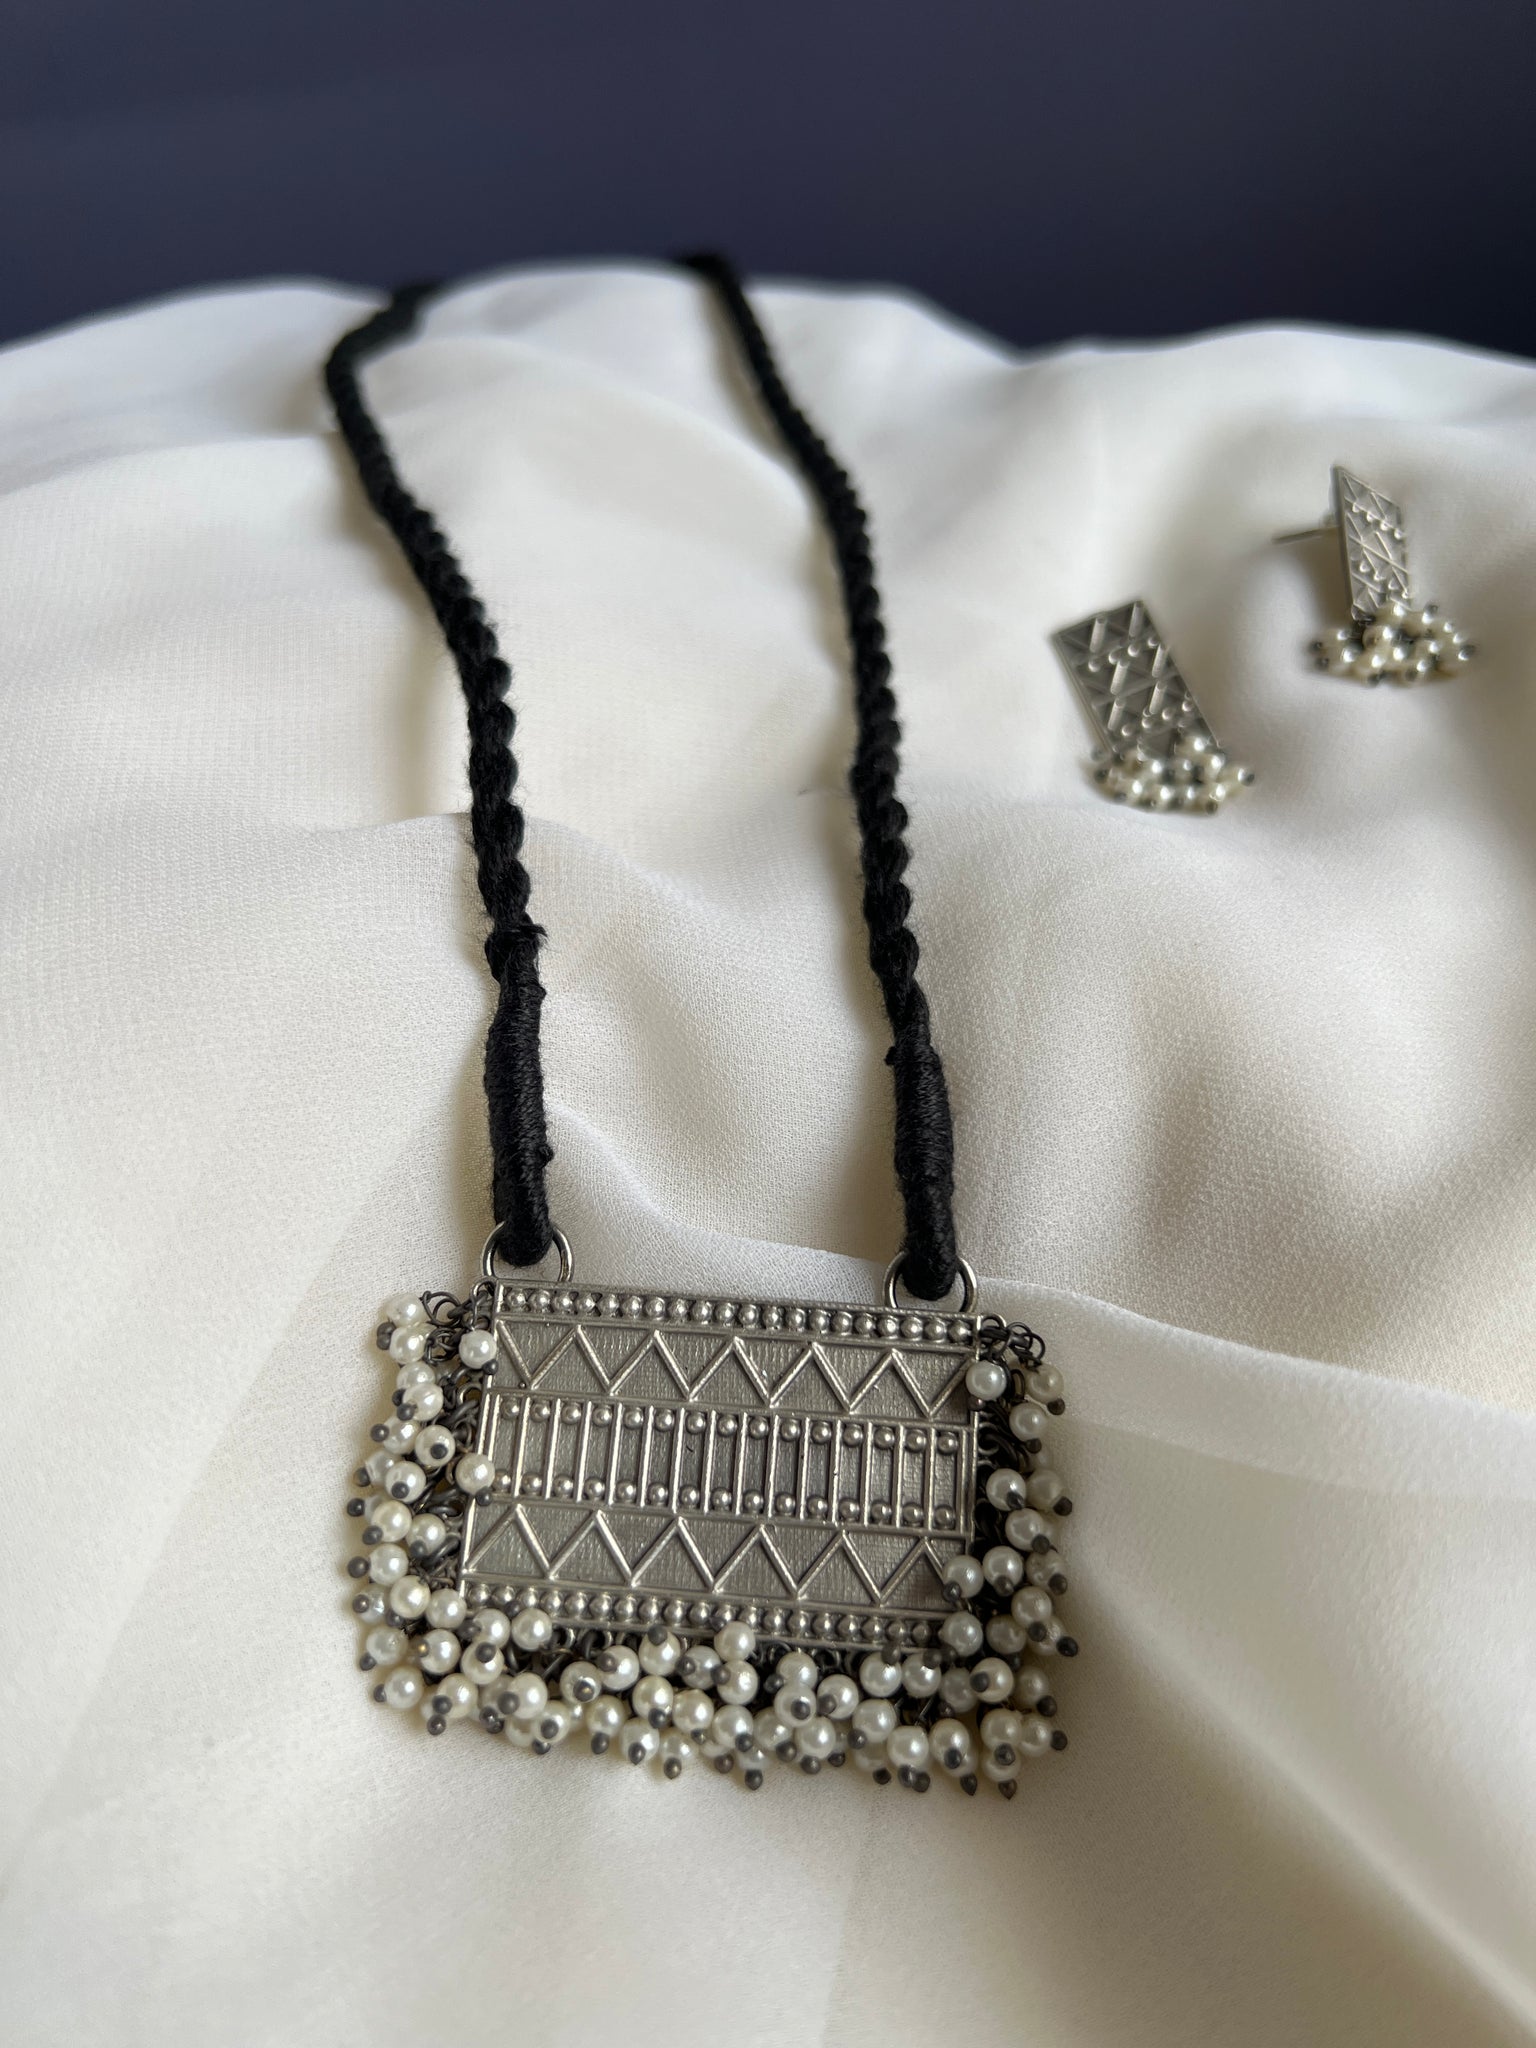 Oxidised pendant black thread with studs